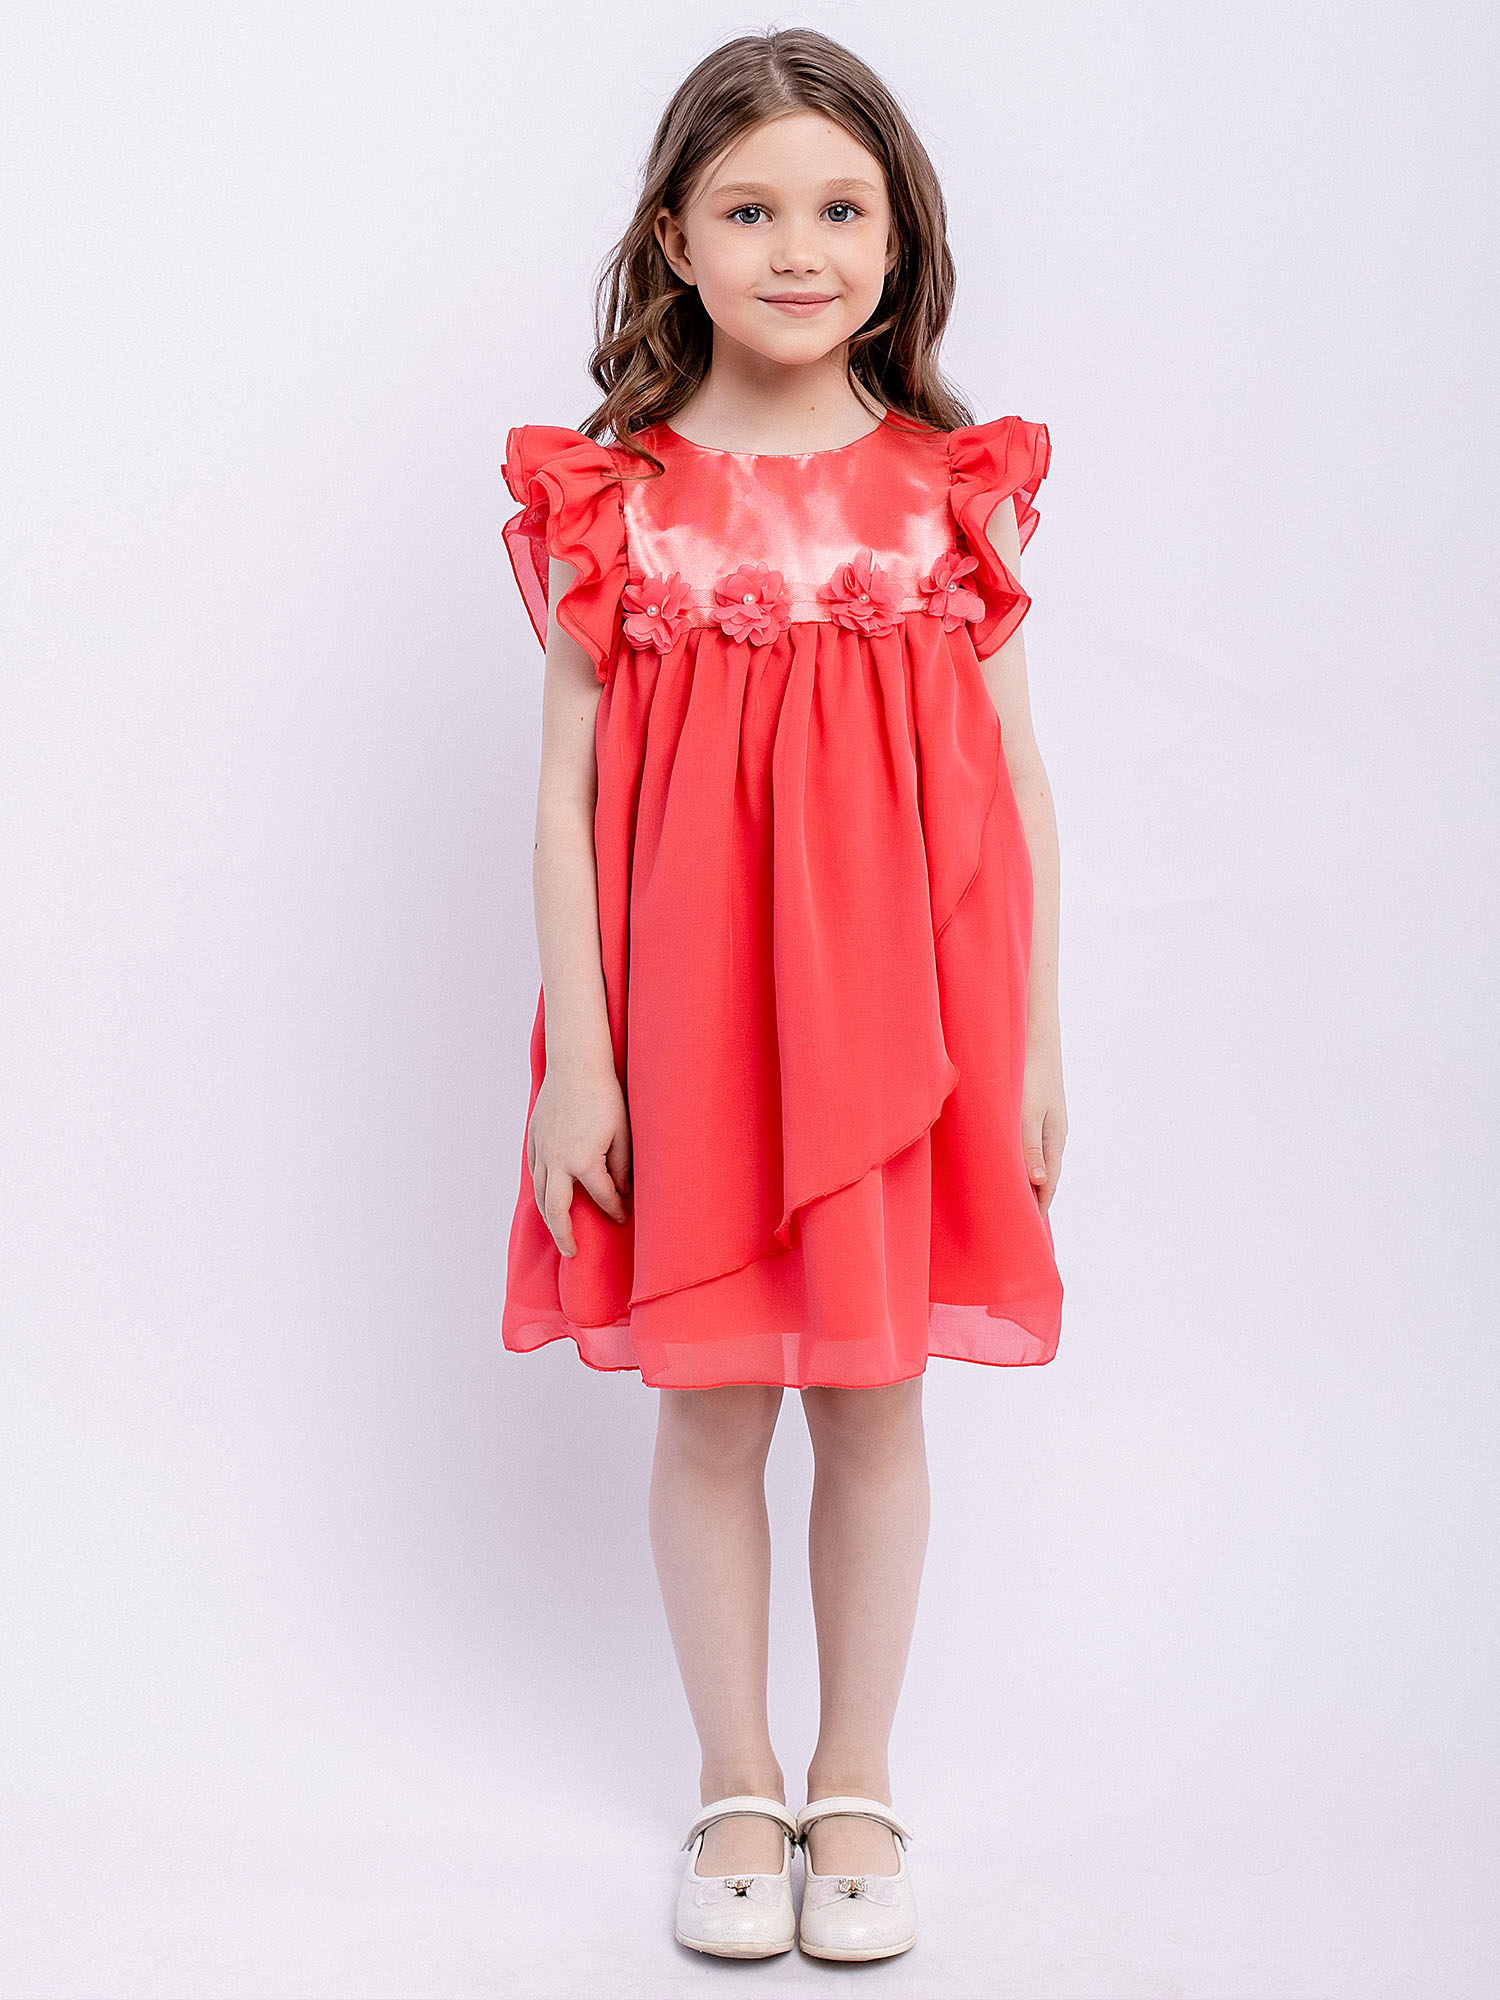 Платье детское Batik 010 п22-2, розовый фламинго, 110 платье детское batik 010 п22 2 розовый фламинго 110